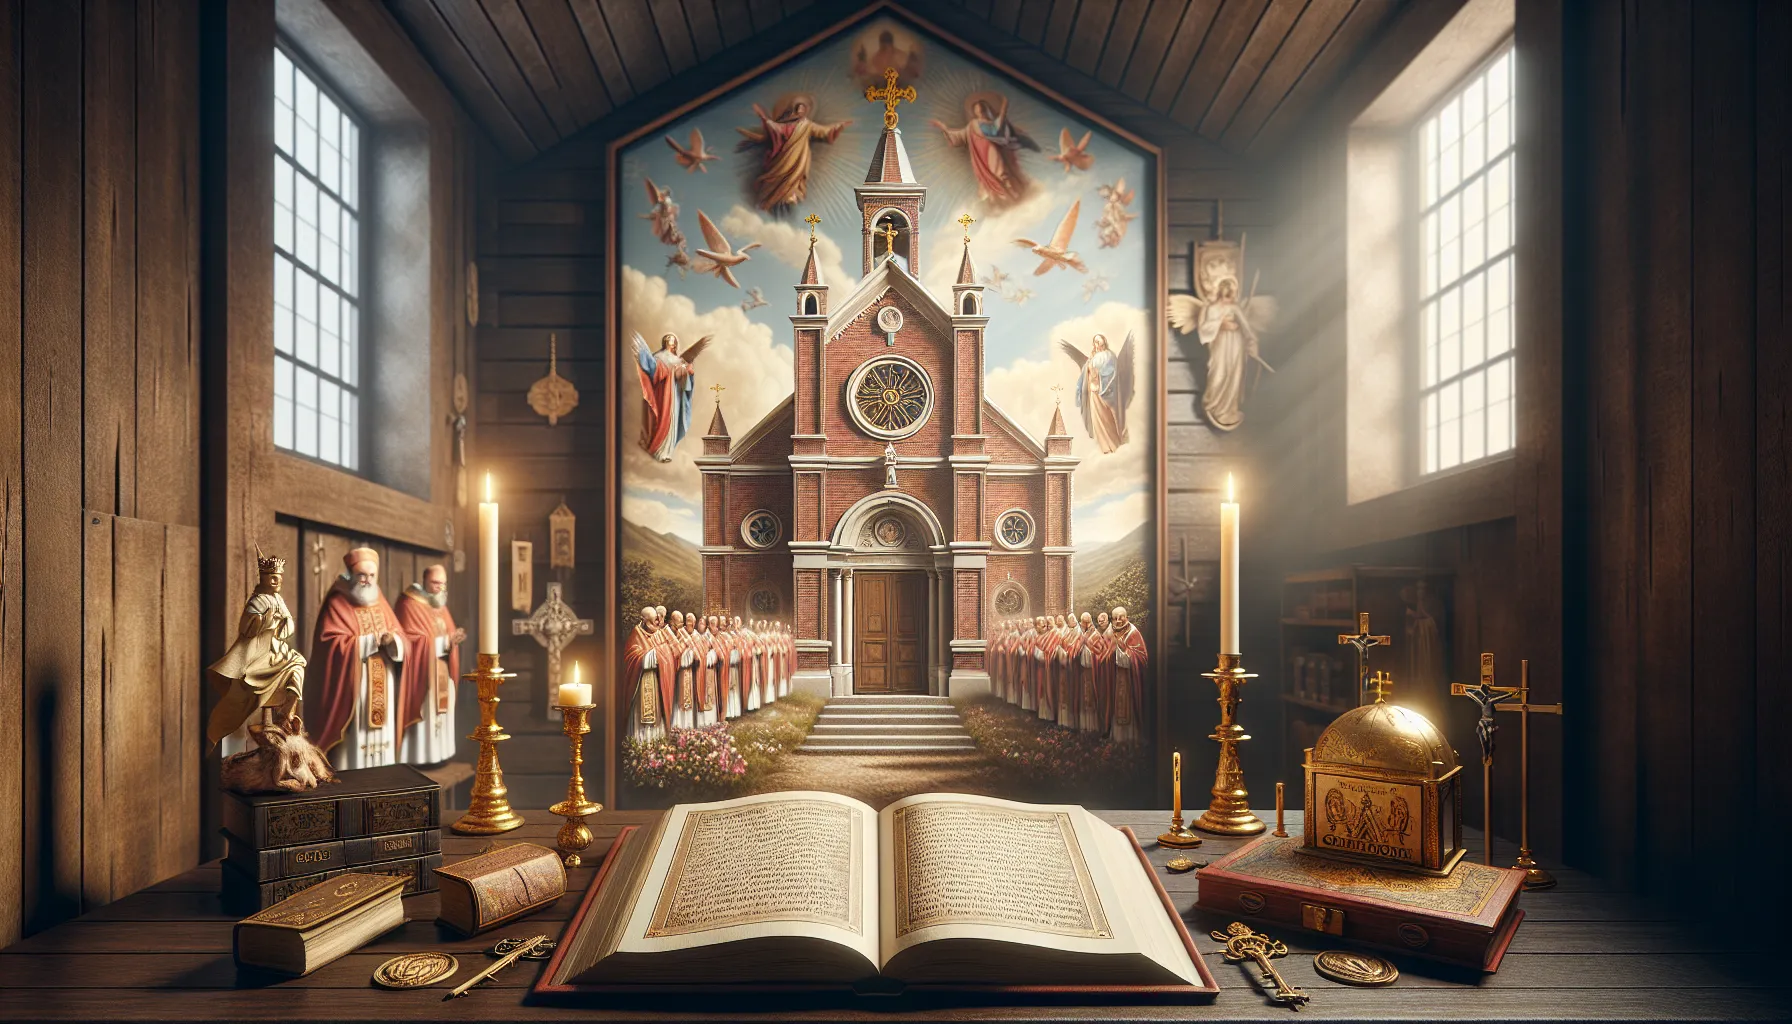 Imagen ilustrativa de la importancia del Catolicismo Romano en la historia y tradiciones de la Iglesia